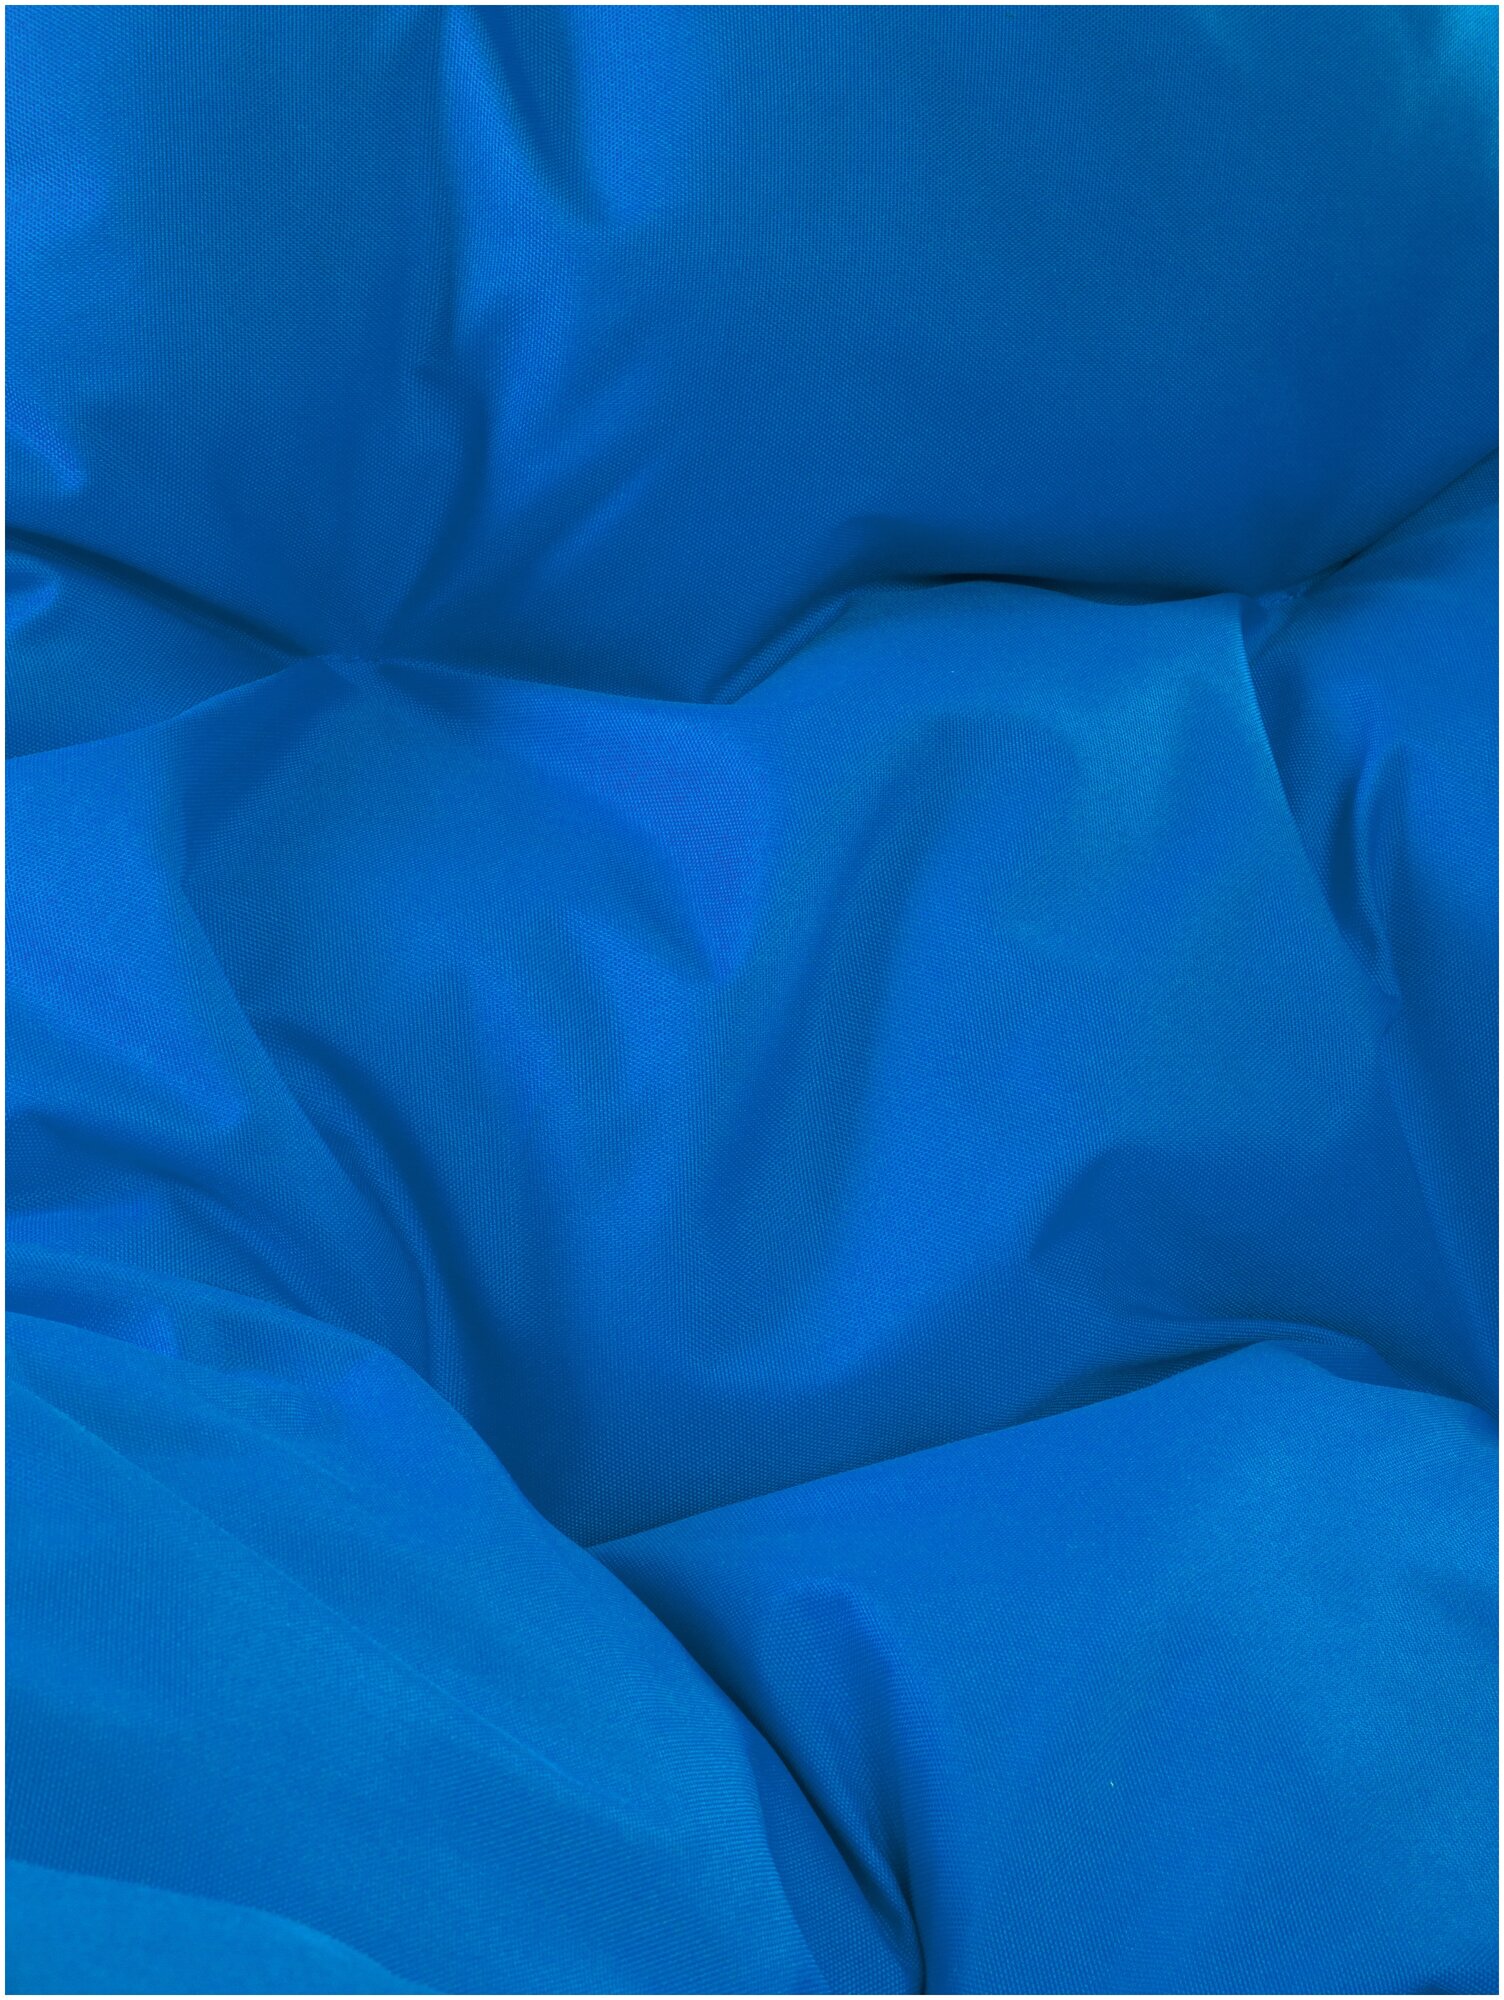 Кресло m-group круг на подставке ротанг белое, синяя подушка - фотография № 16